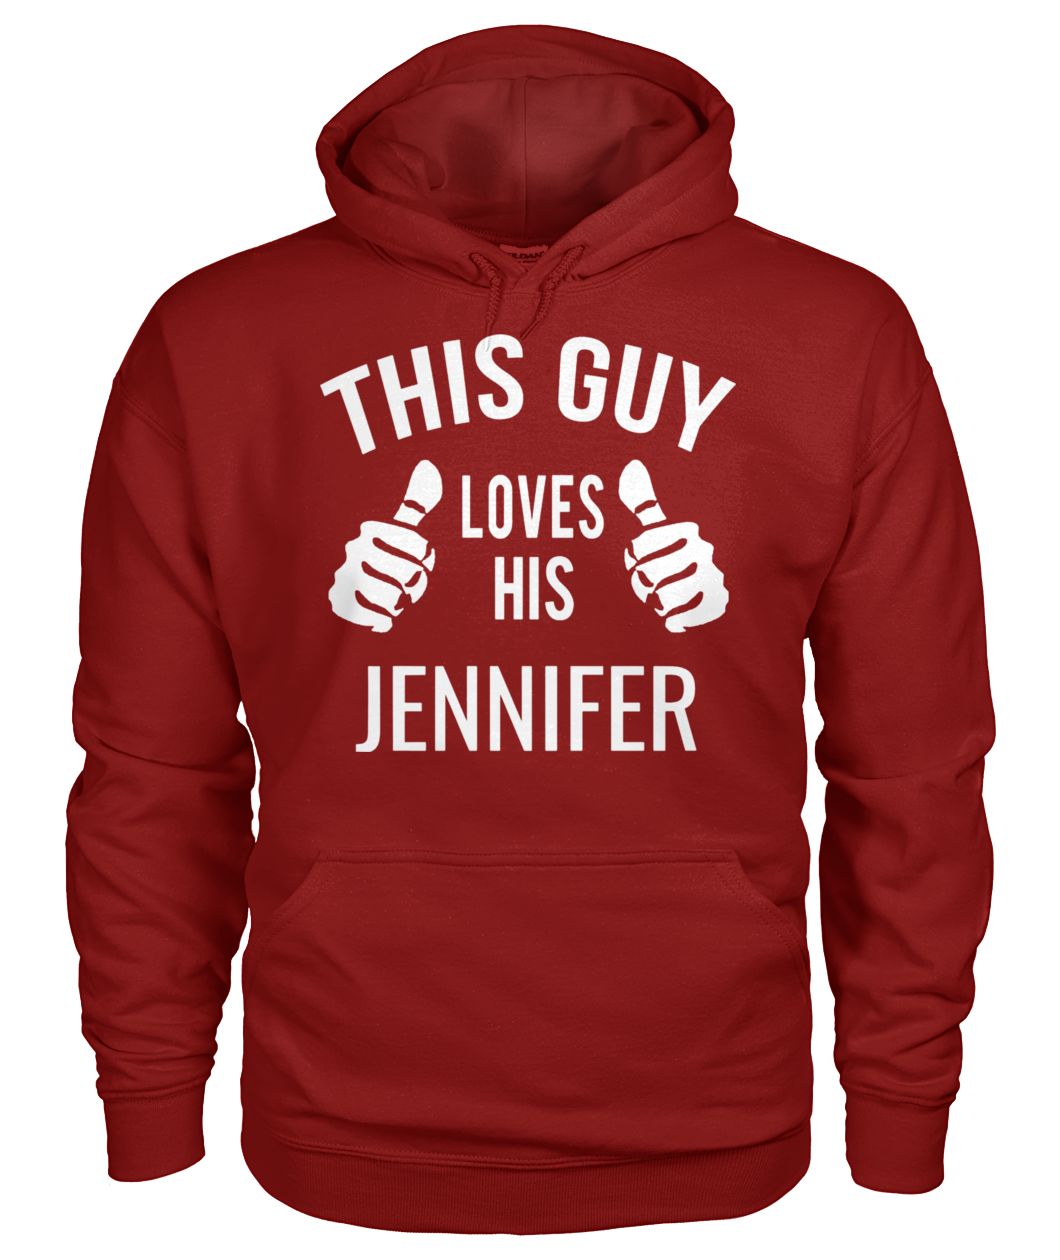 This guy loves his jennifer gildan hoodie